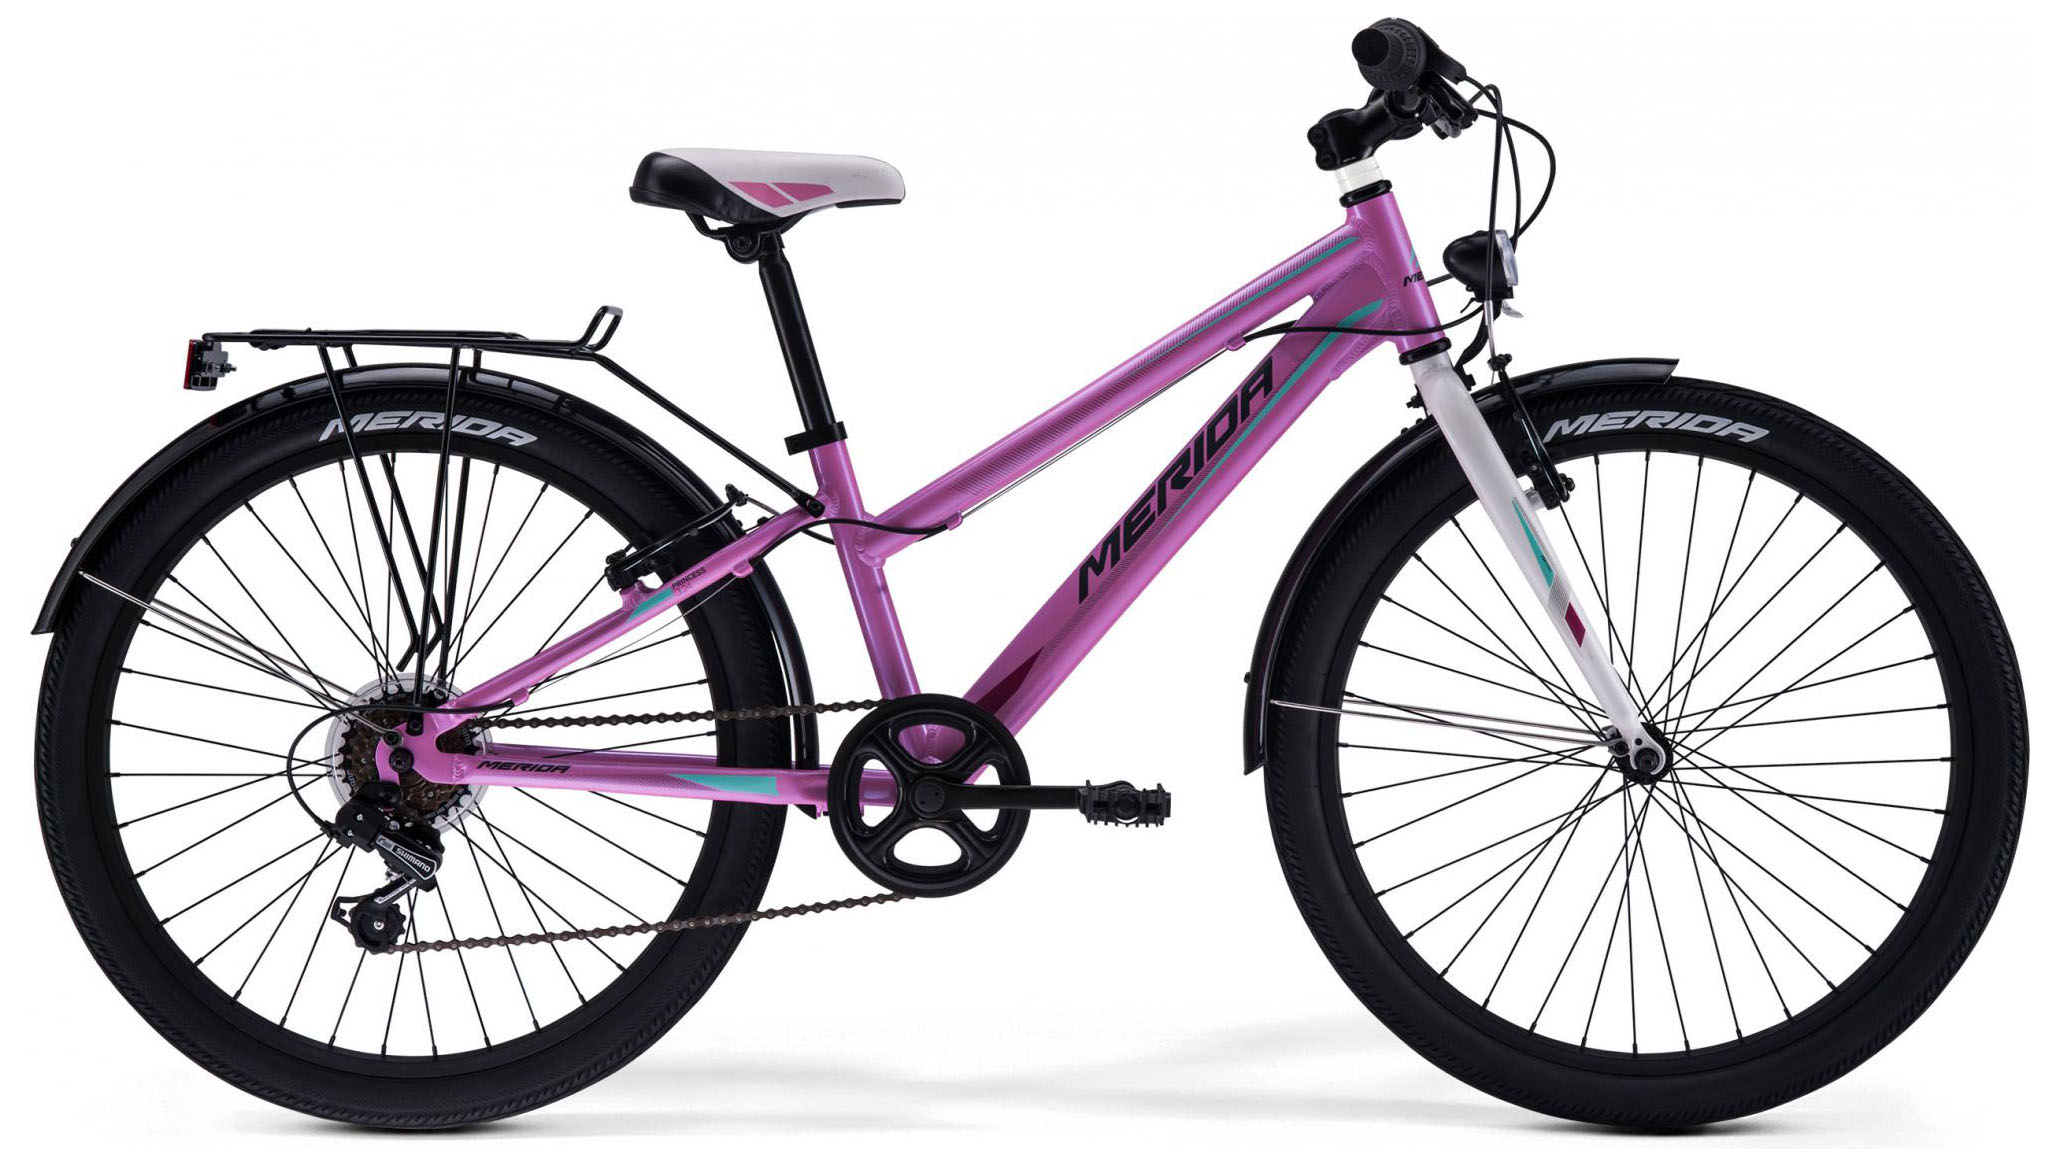  Отзывы о Подростковом велосипеде Merida Princess J24 2019